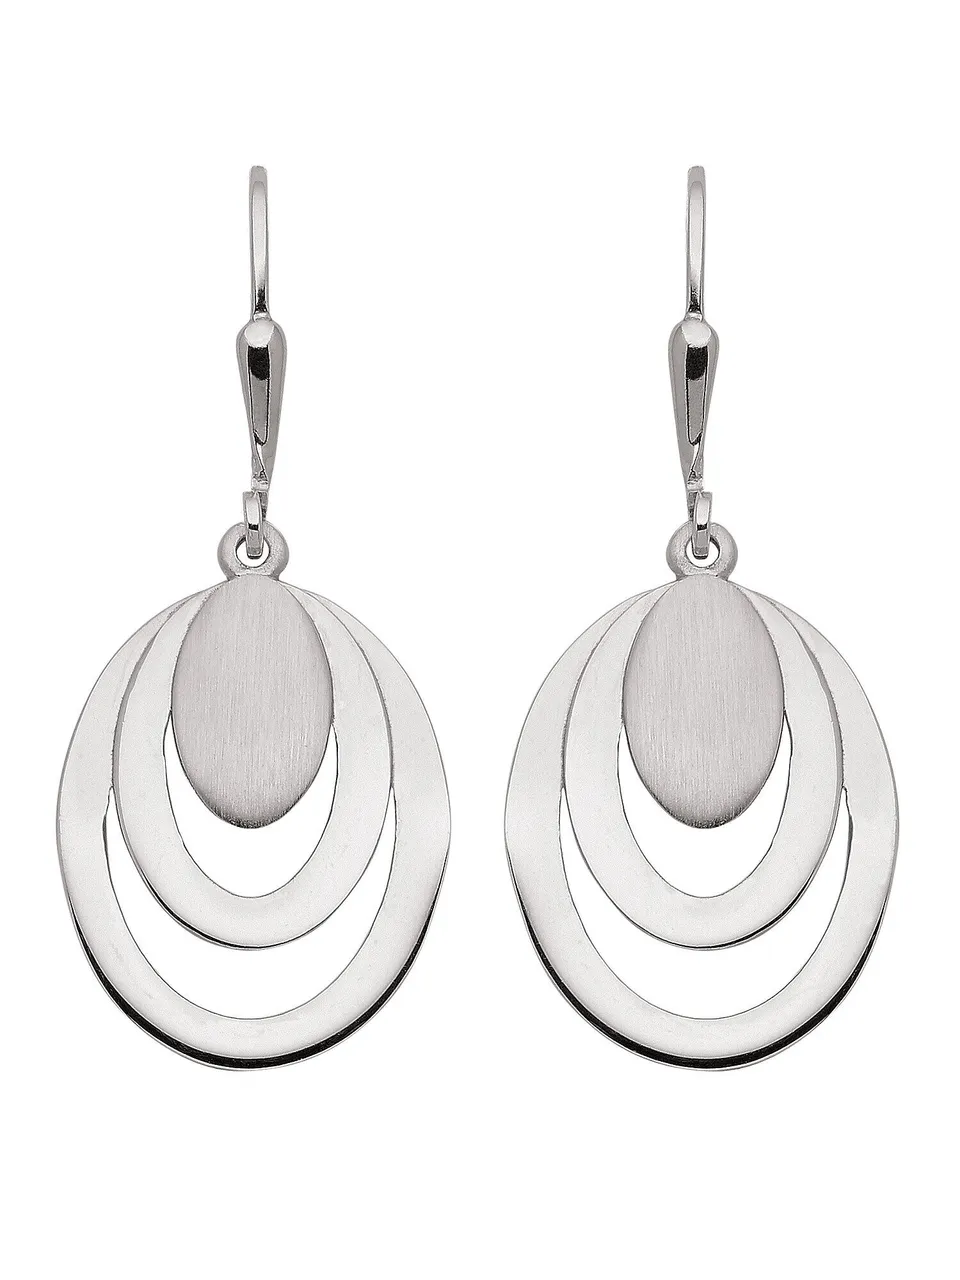 Paar Ohrhänger ADELIA´S "925 Silber Ohrringe Ohrhänger" Gr. Damen, Silber 925 (Sterlingsilber), silberfarben (silber) Damen Ohrhänger Silberschmuck fü...